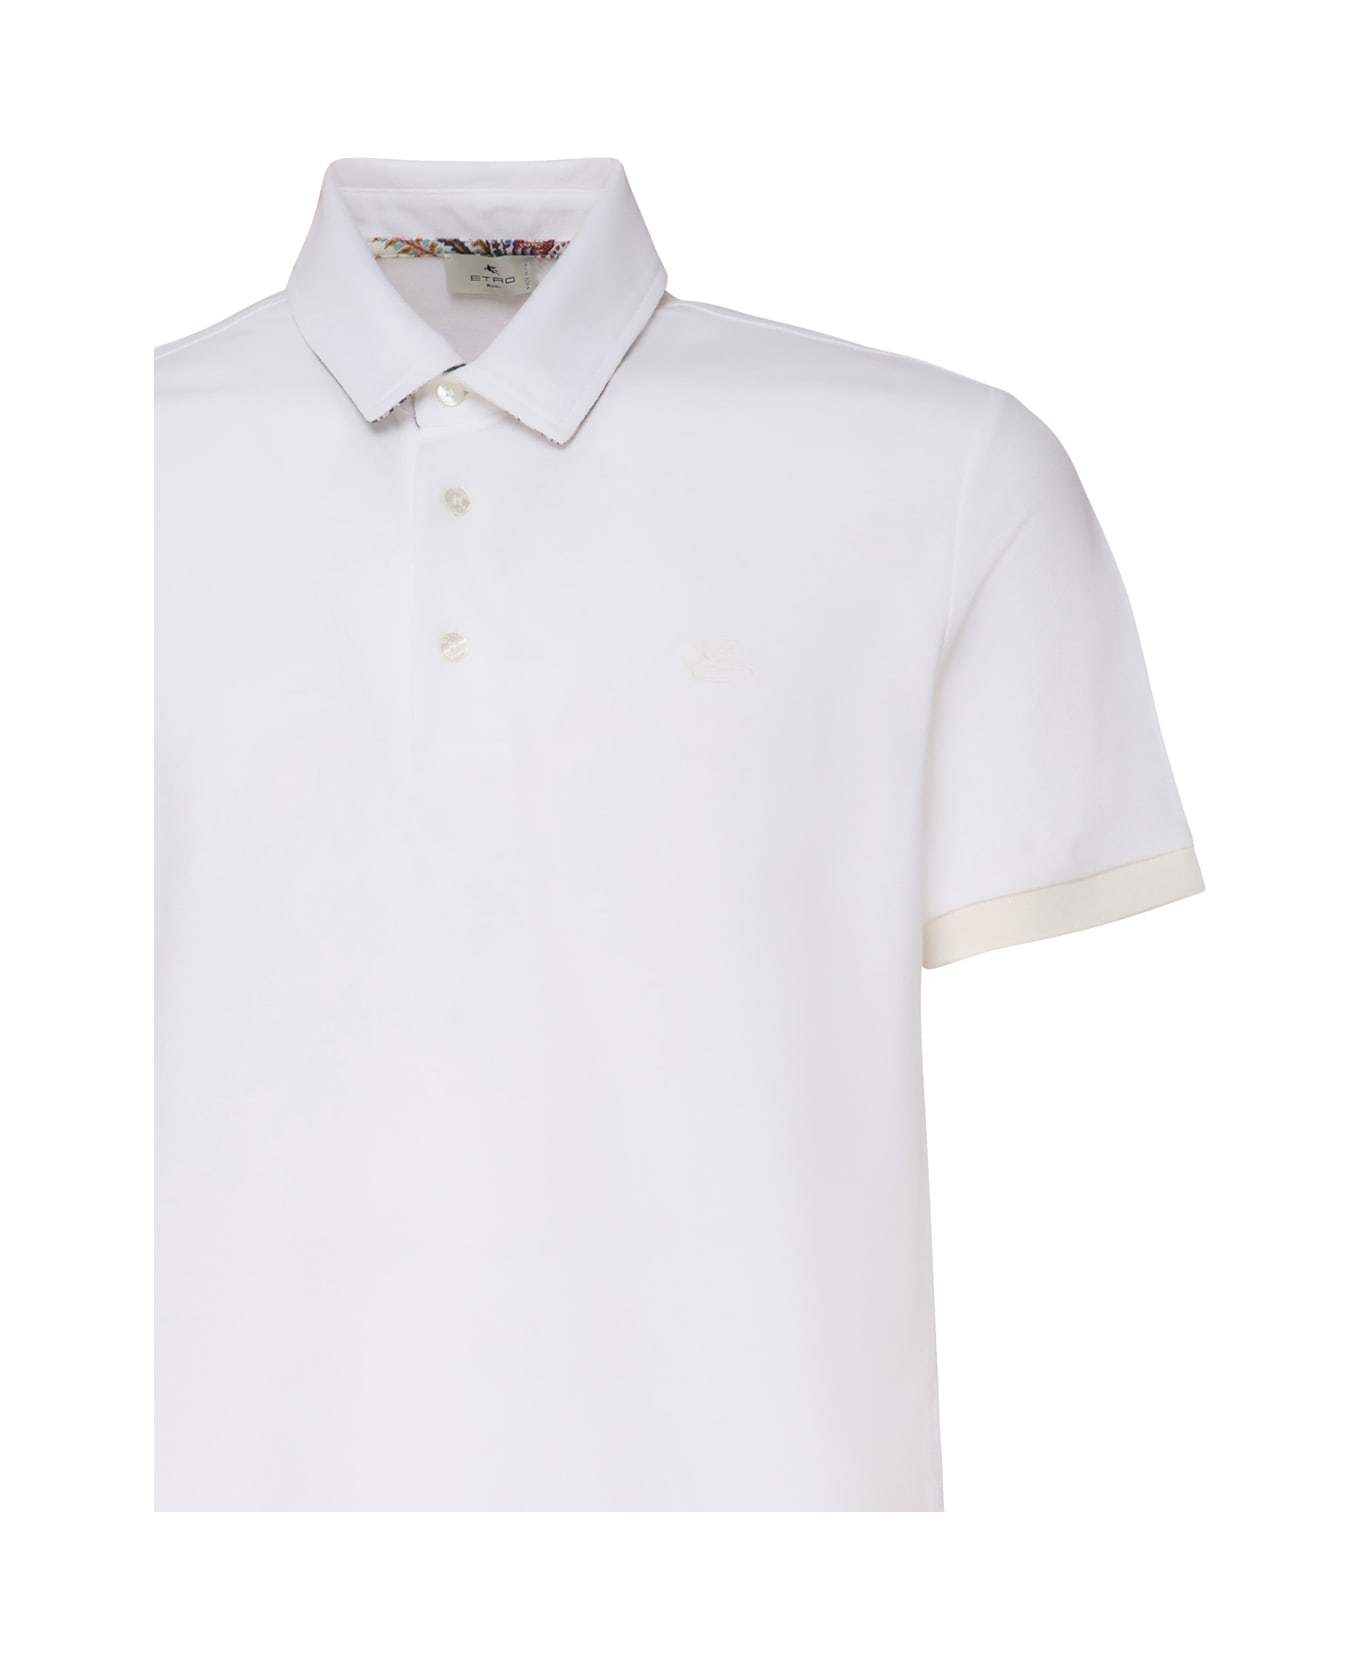 Etro Polo Shirt With Embroidered Pegasus - White